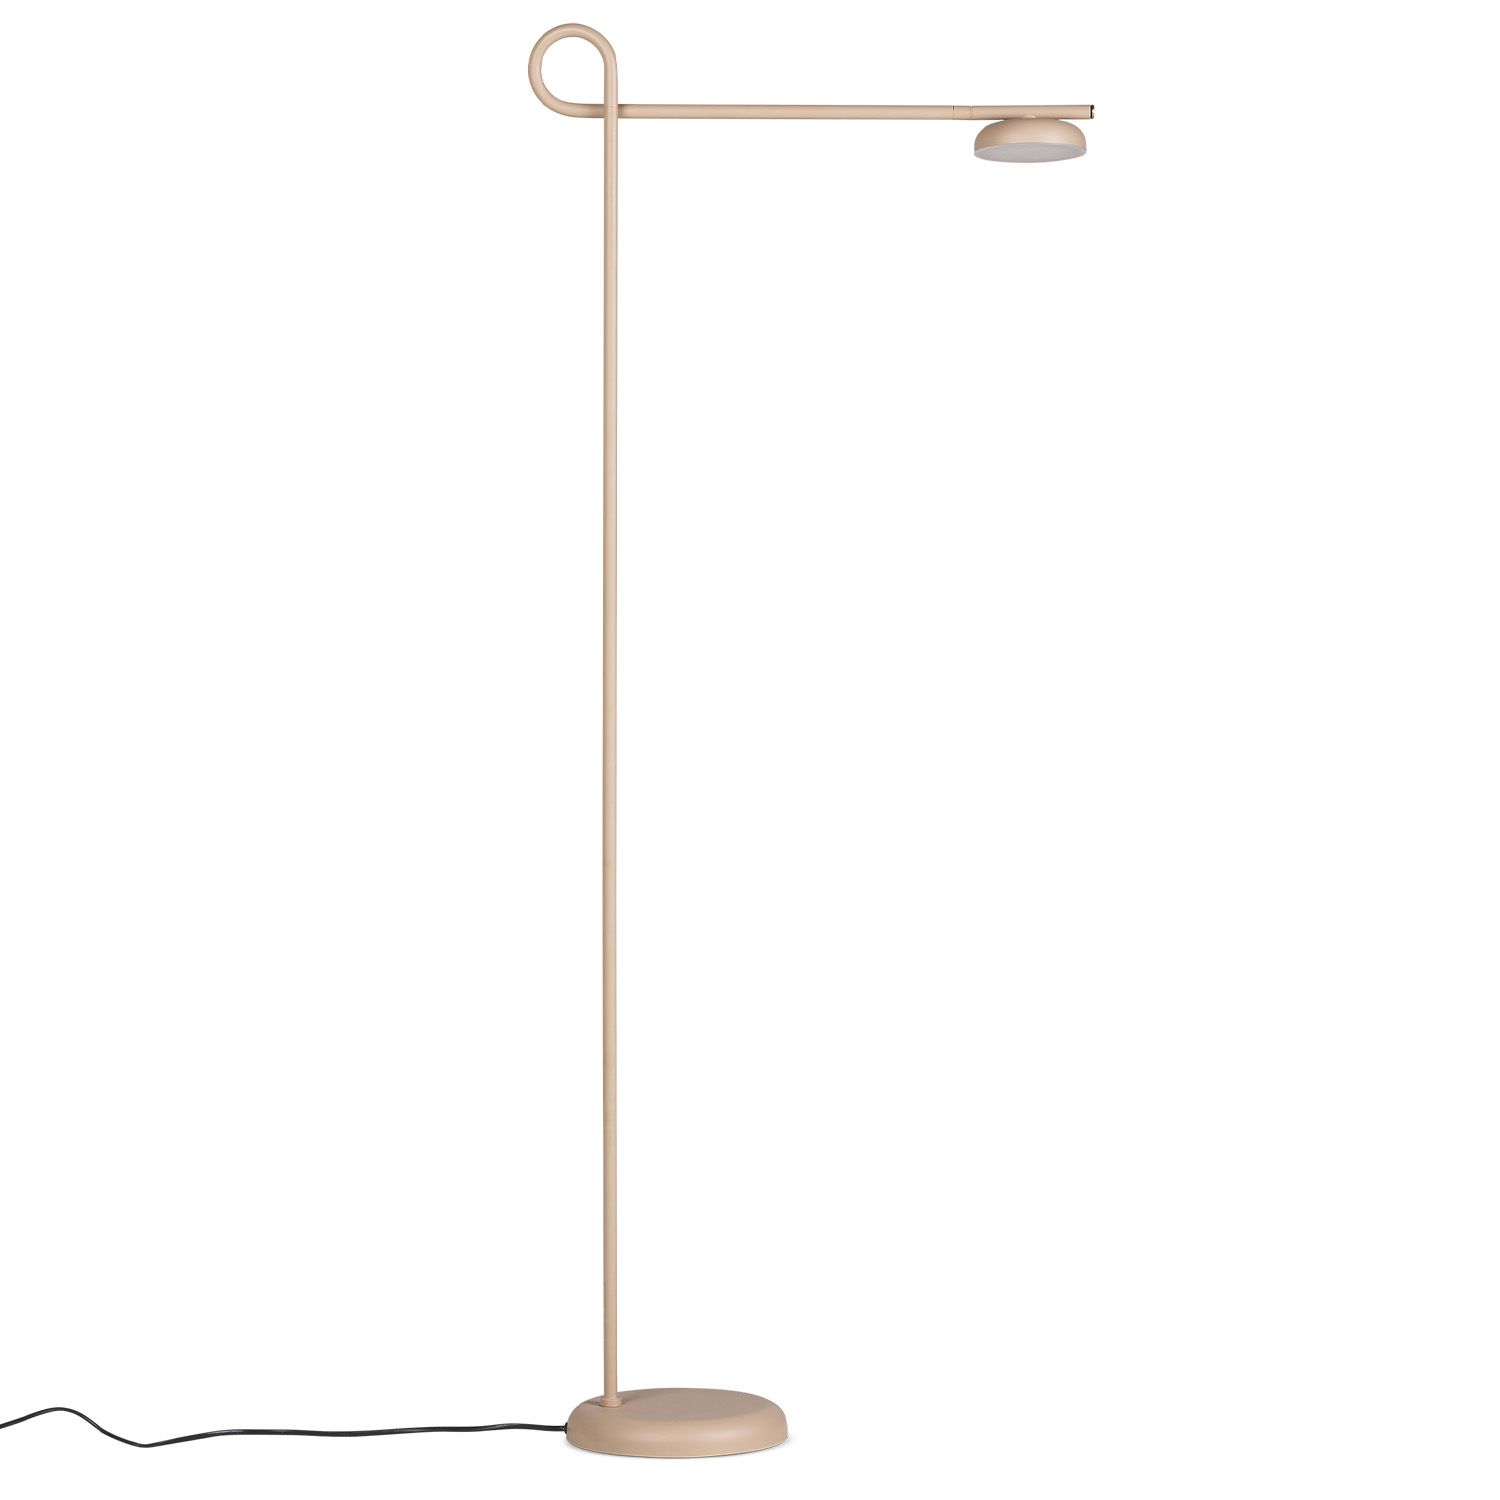 Northern designové lampy Salto Floor Lamp - DESIGNPROPAGANDA